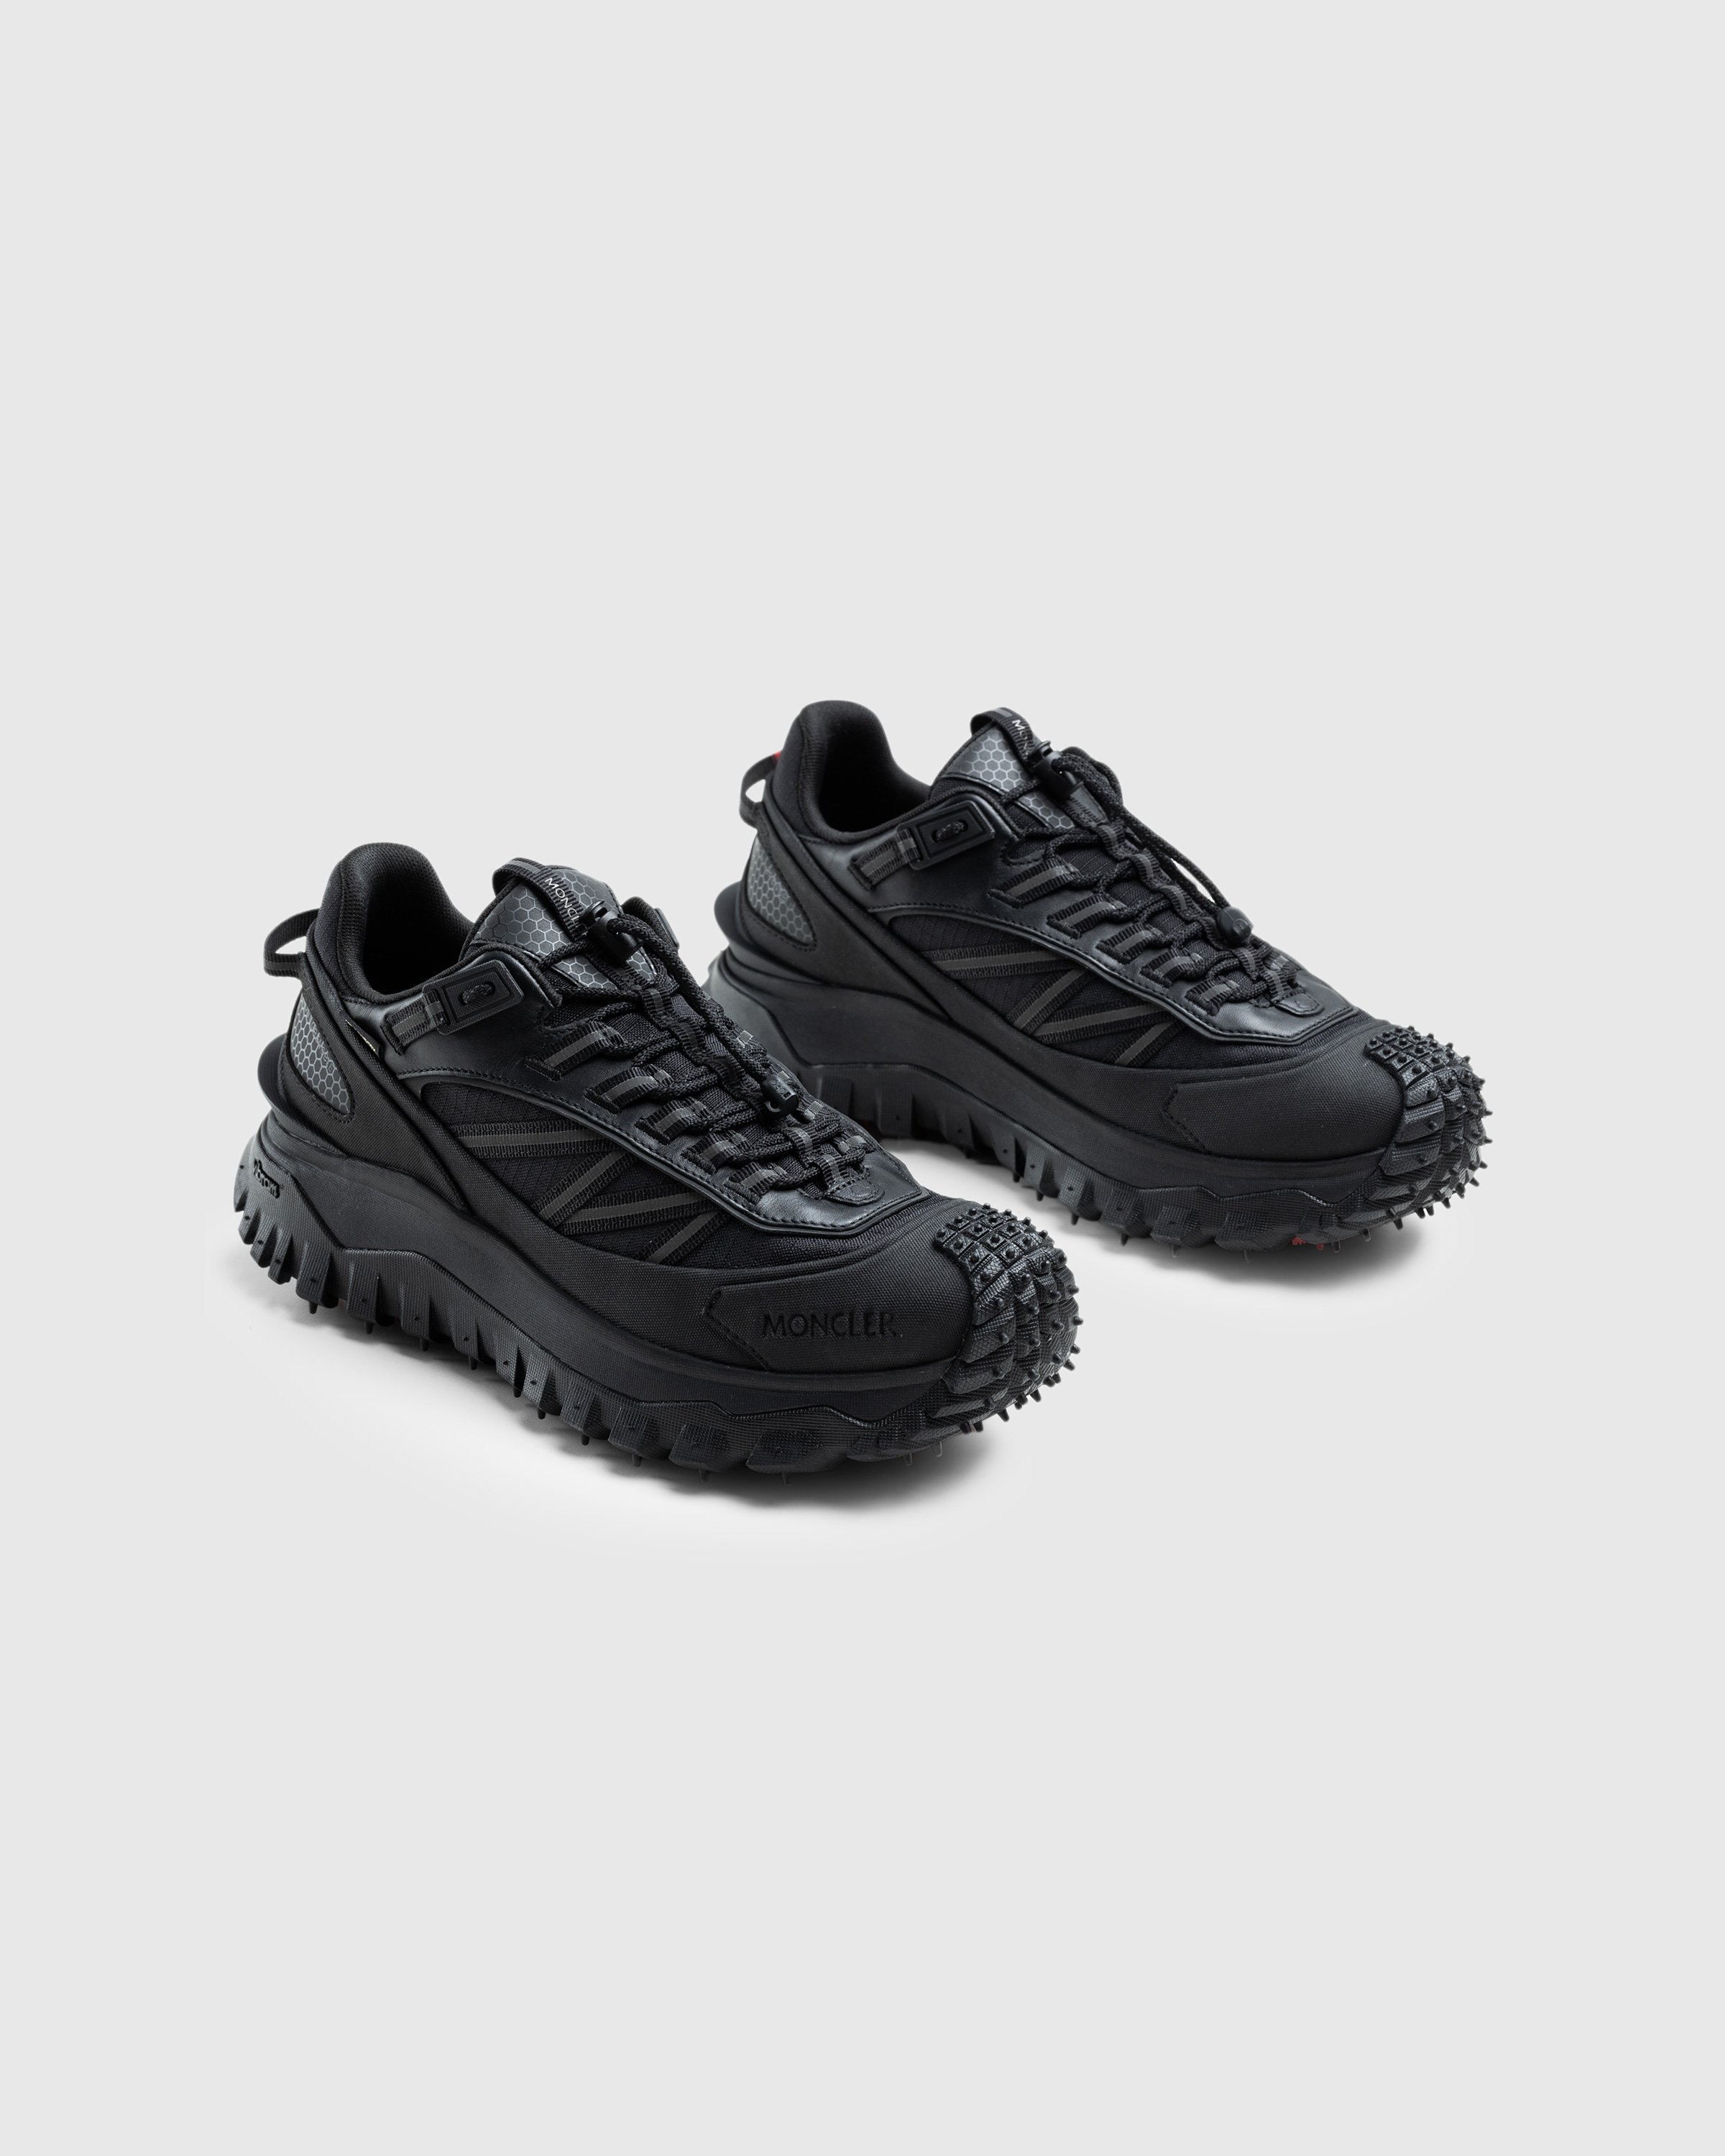 Moncler - Trailgrip Gtx Low Top Sneakers Black - Footwear - Black - Image 3